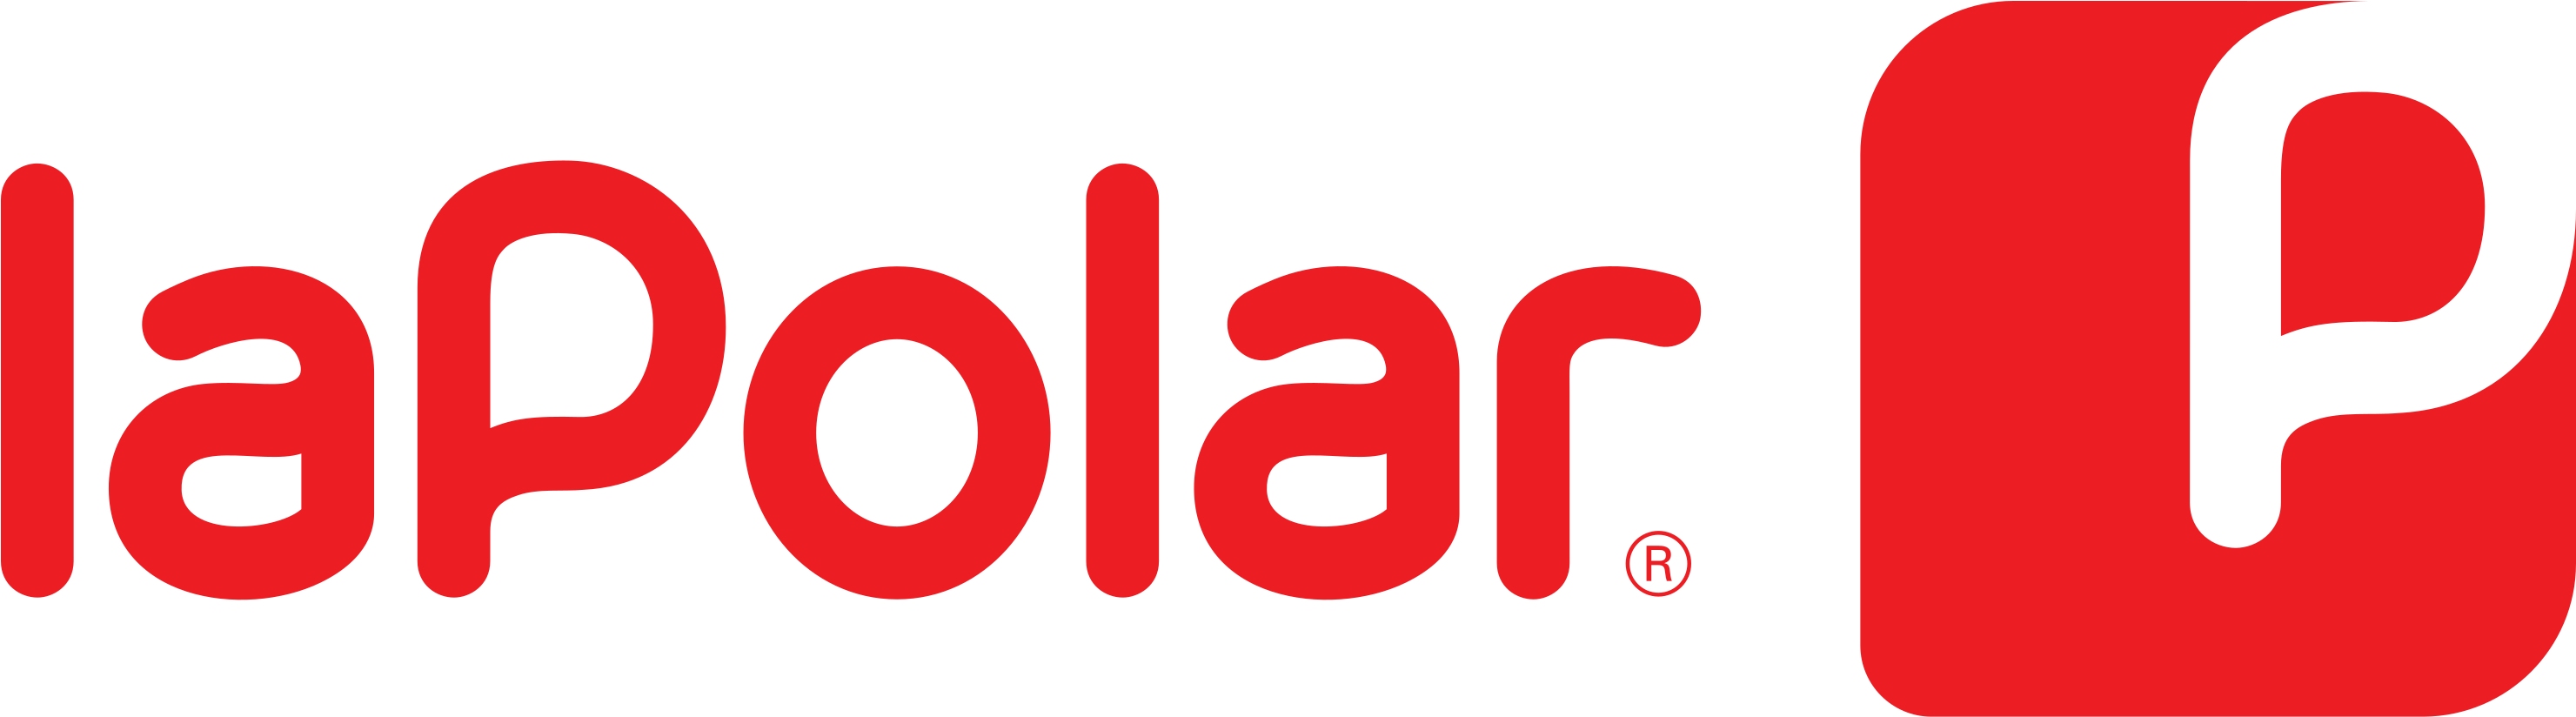 Logotipo La Polar - Logo La Polar 2017 (3000x863), Png Download